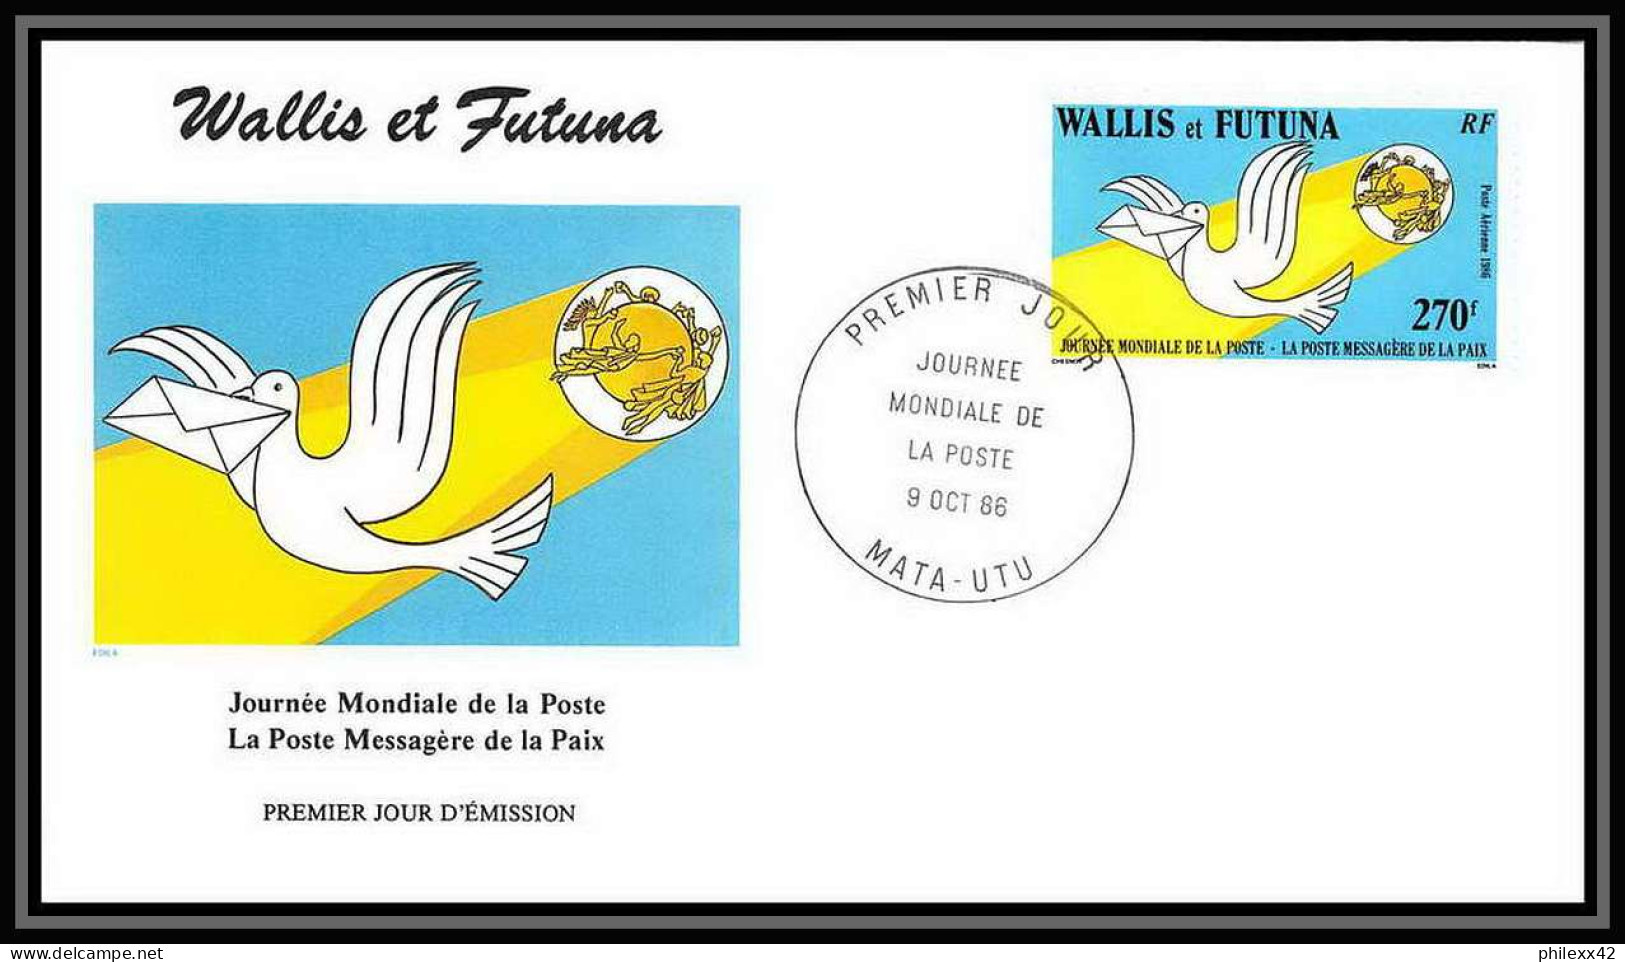 1846 épreuve De Luxe / Deluxe Proof Wallis Et Futuna PA 153 N° 153 Journée De La Poste UPU Colombe Dove + Fdc - Geschnittene, Druckproben Und Abarten